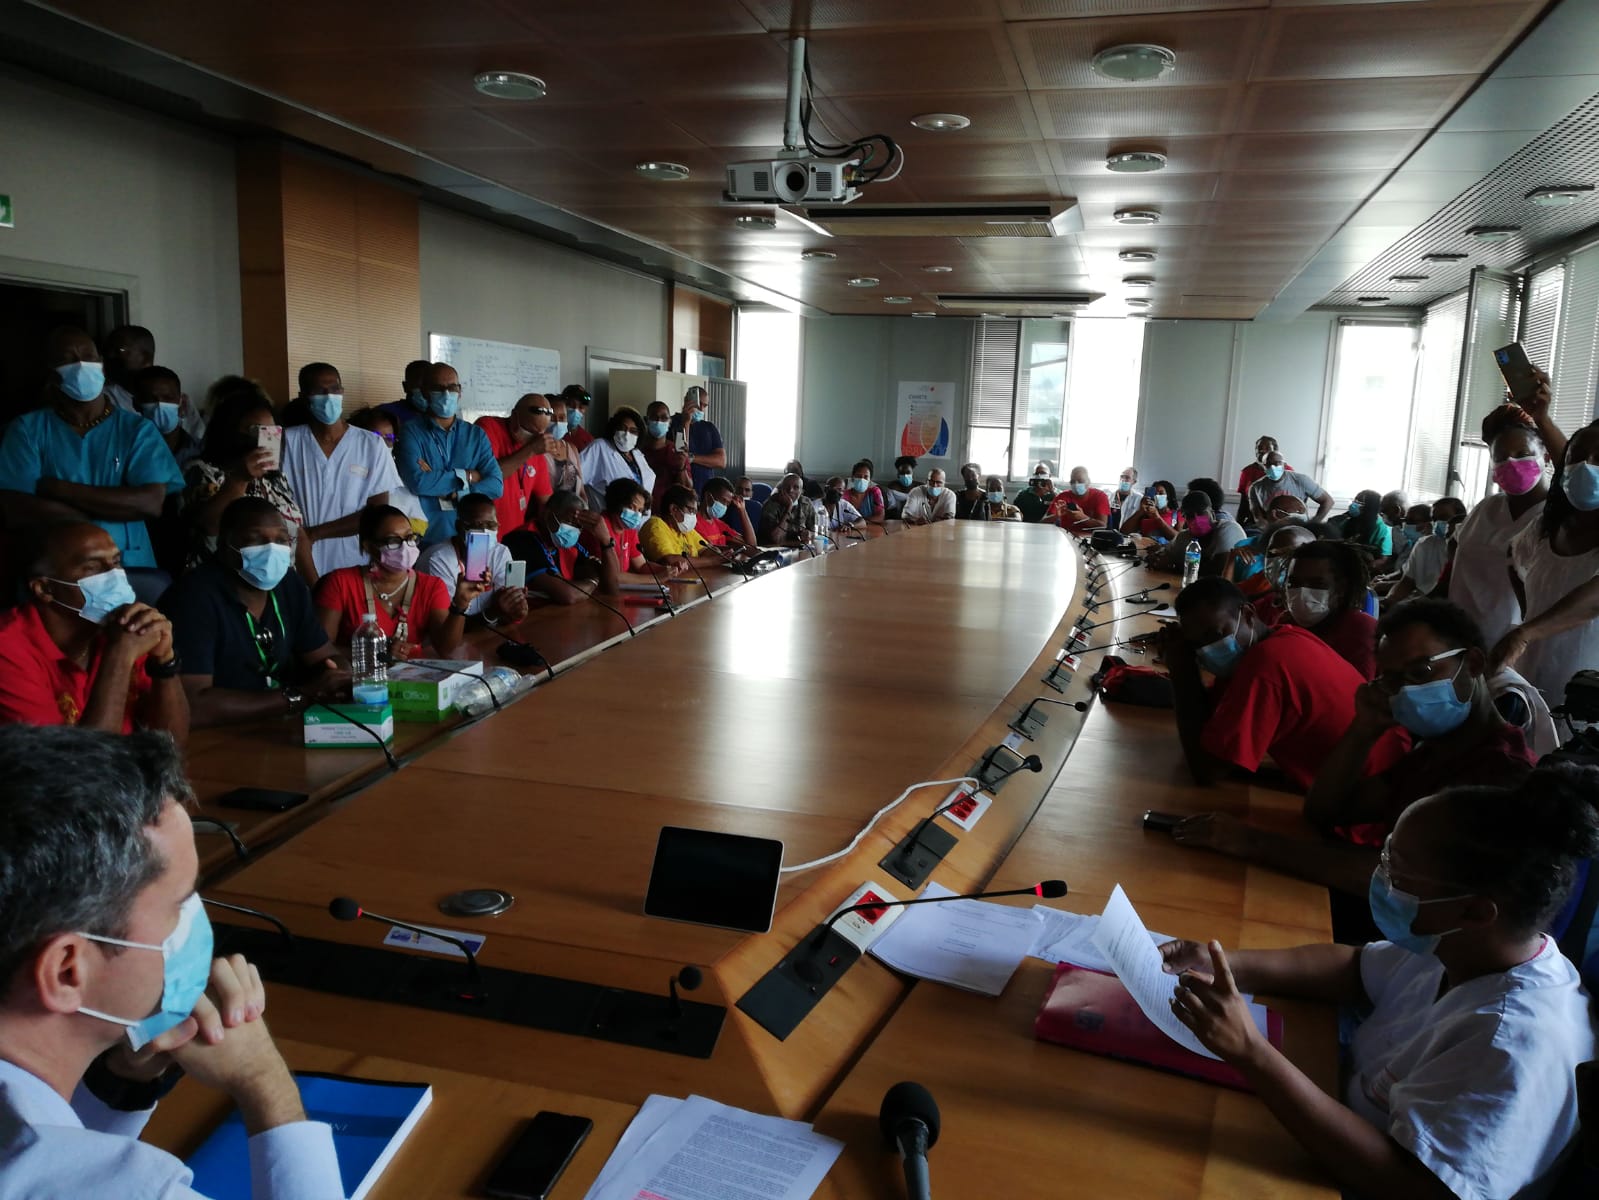     Les syndicats hospitaliers opposés à l'obligation vaccinale ont rencontré la direction du CHU de Martinique

